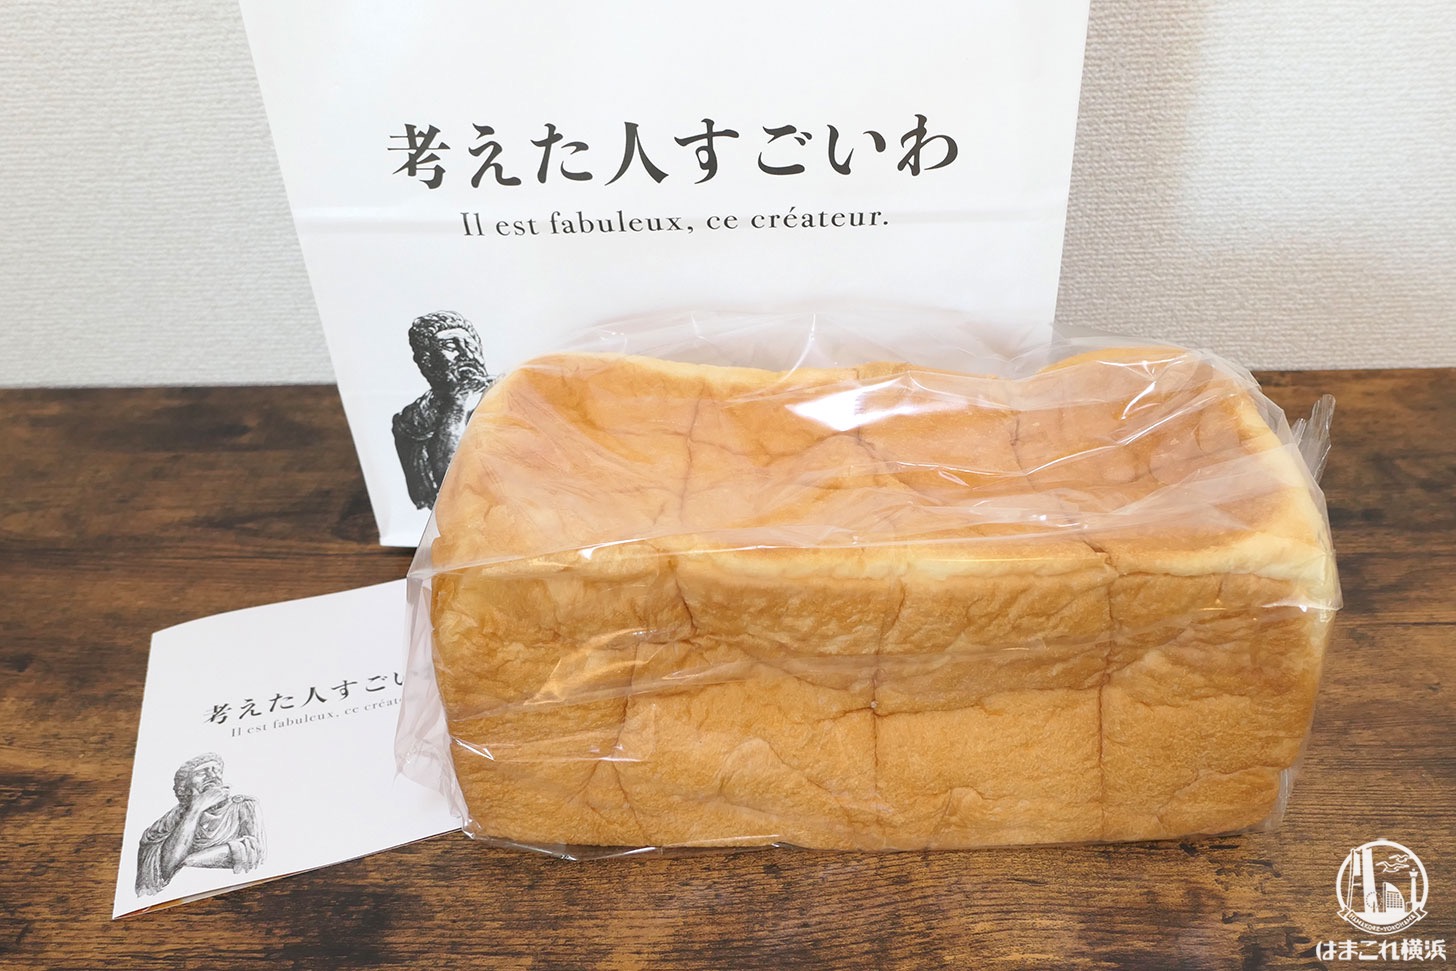 考えた人すごいわ 2号店 横浜 菊名にオープン 高級食パン専門店 はまこれ横浜